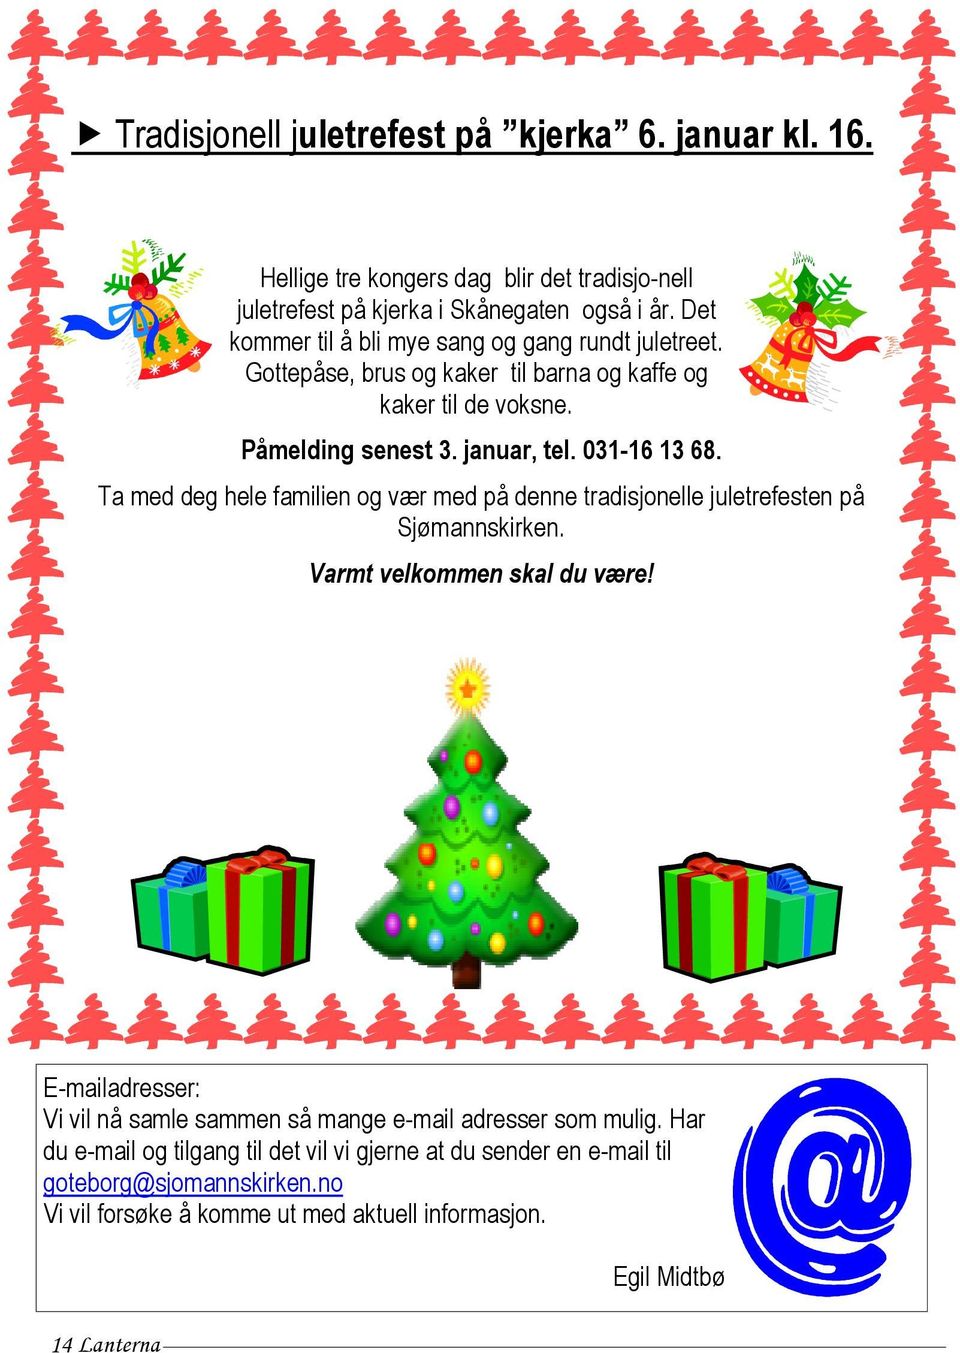 Ta med deg hele familien og vær med på denne tradisjonelle juletrefesten på Sjømannskirken. Varmt velkommen skal du være!